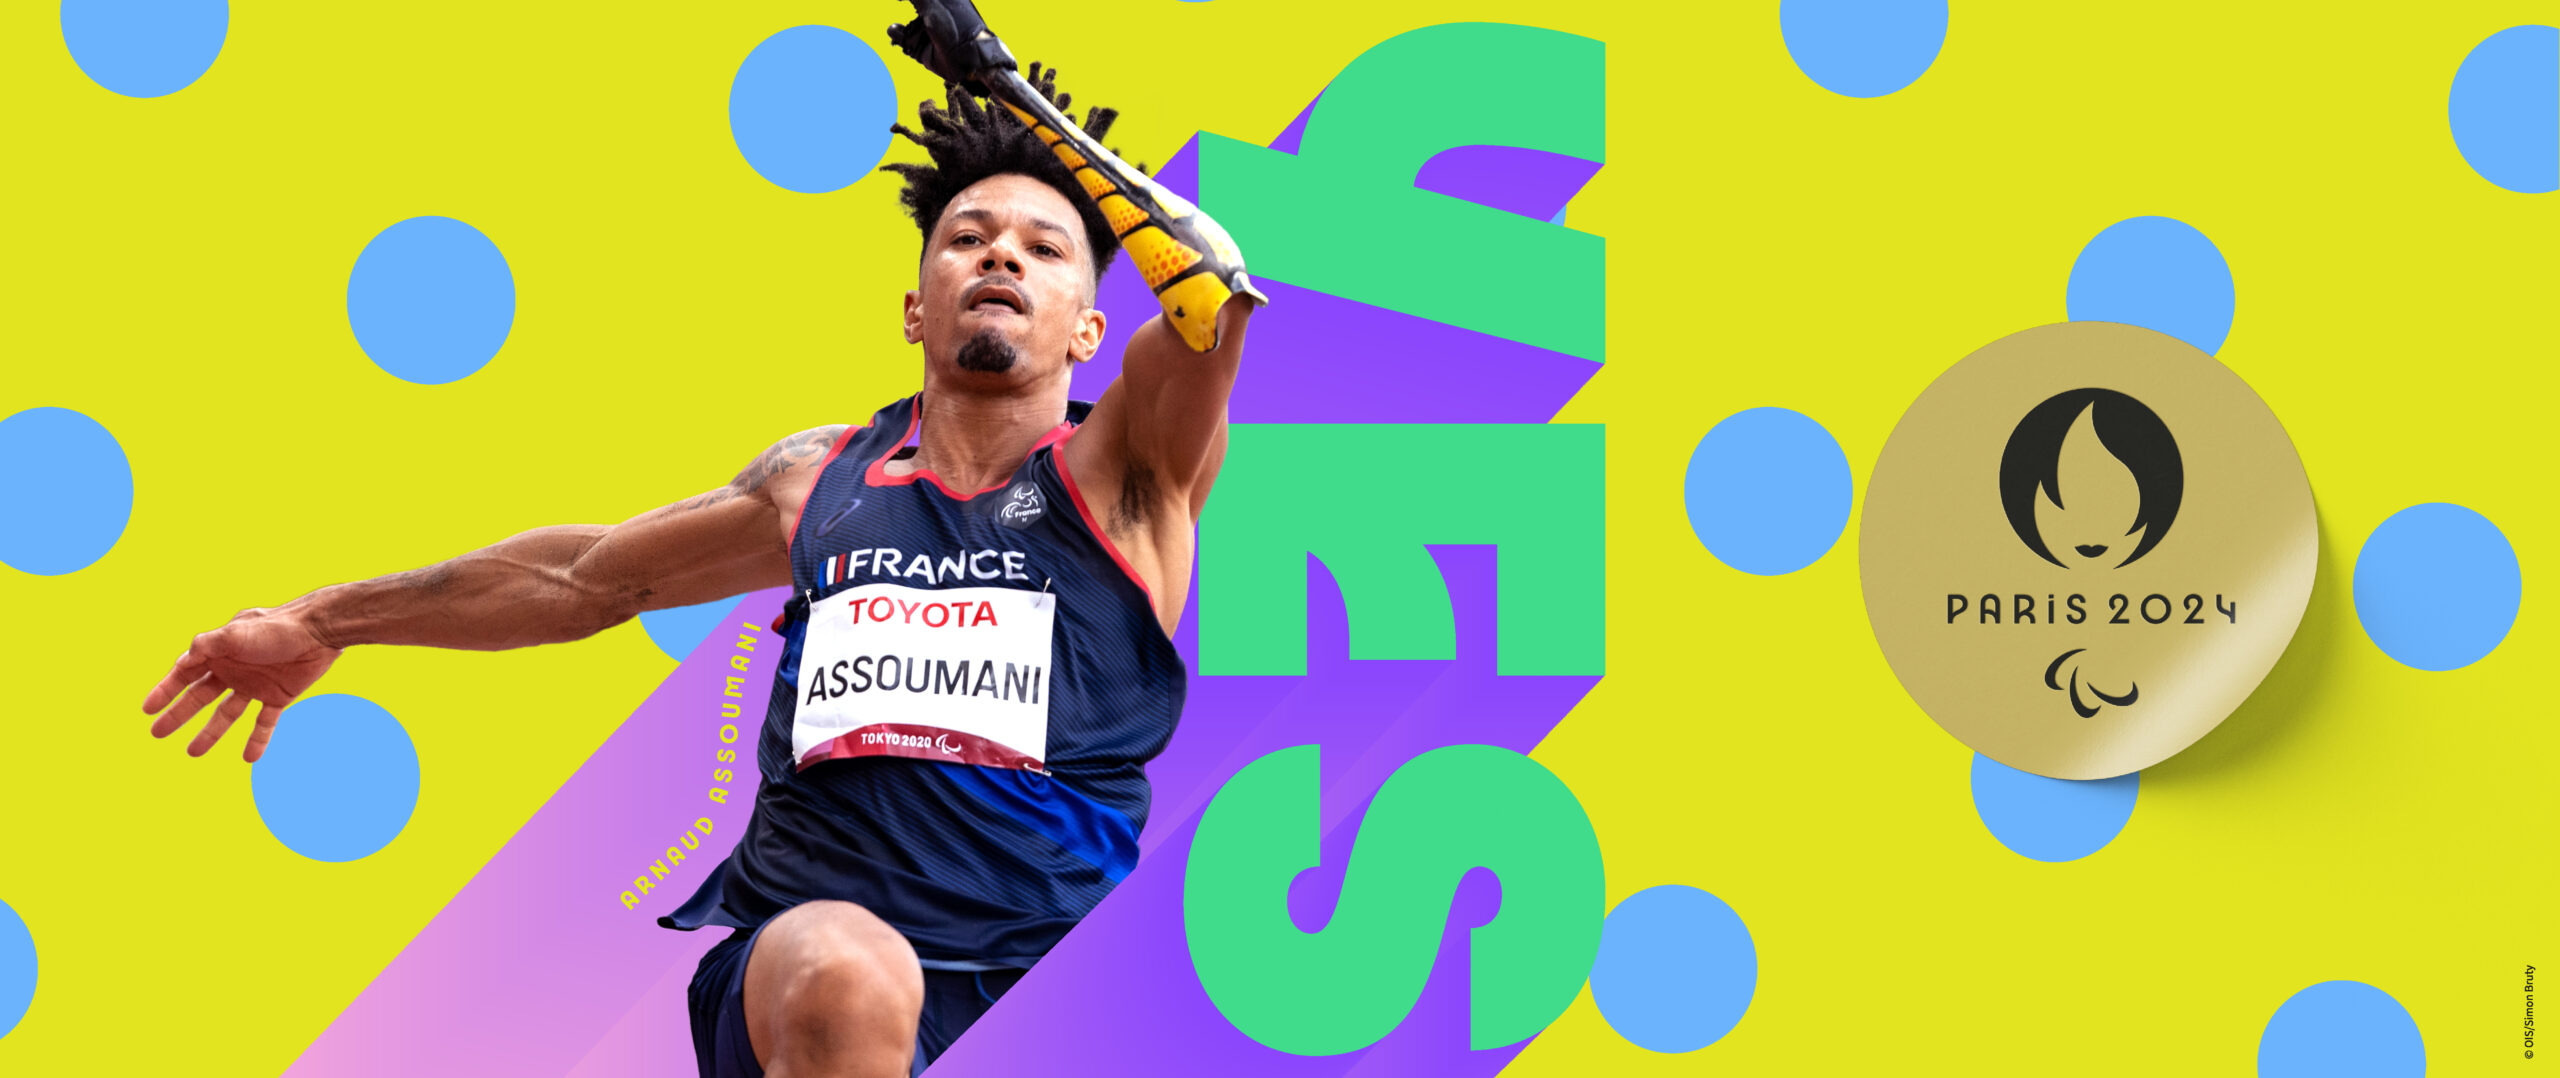 Paris 2024 : 3 nouveaux athlètes sélectionnés pour les Jeux Olympiques